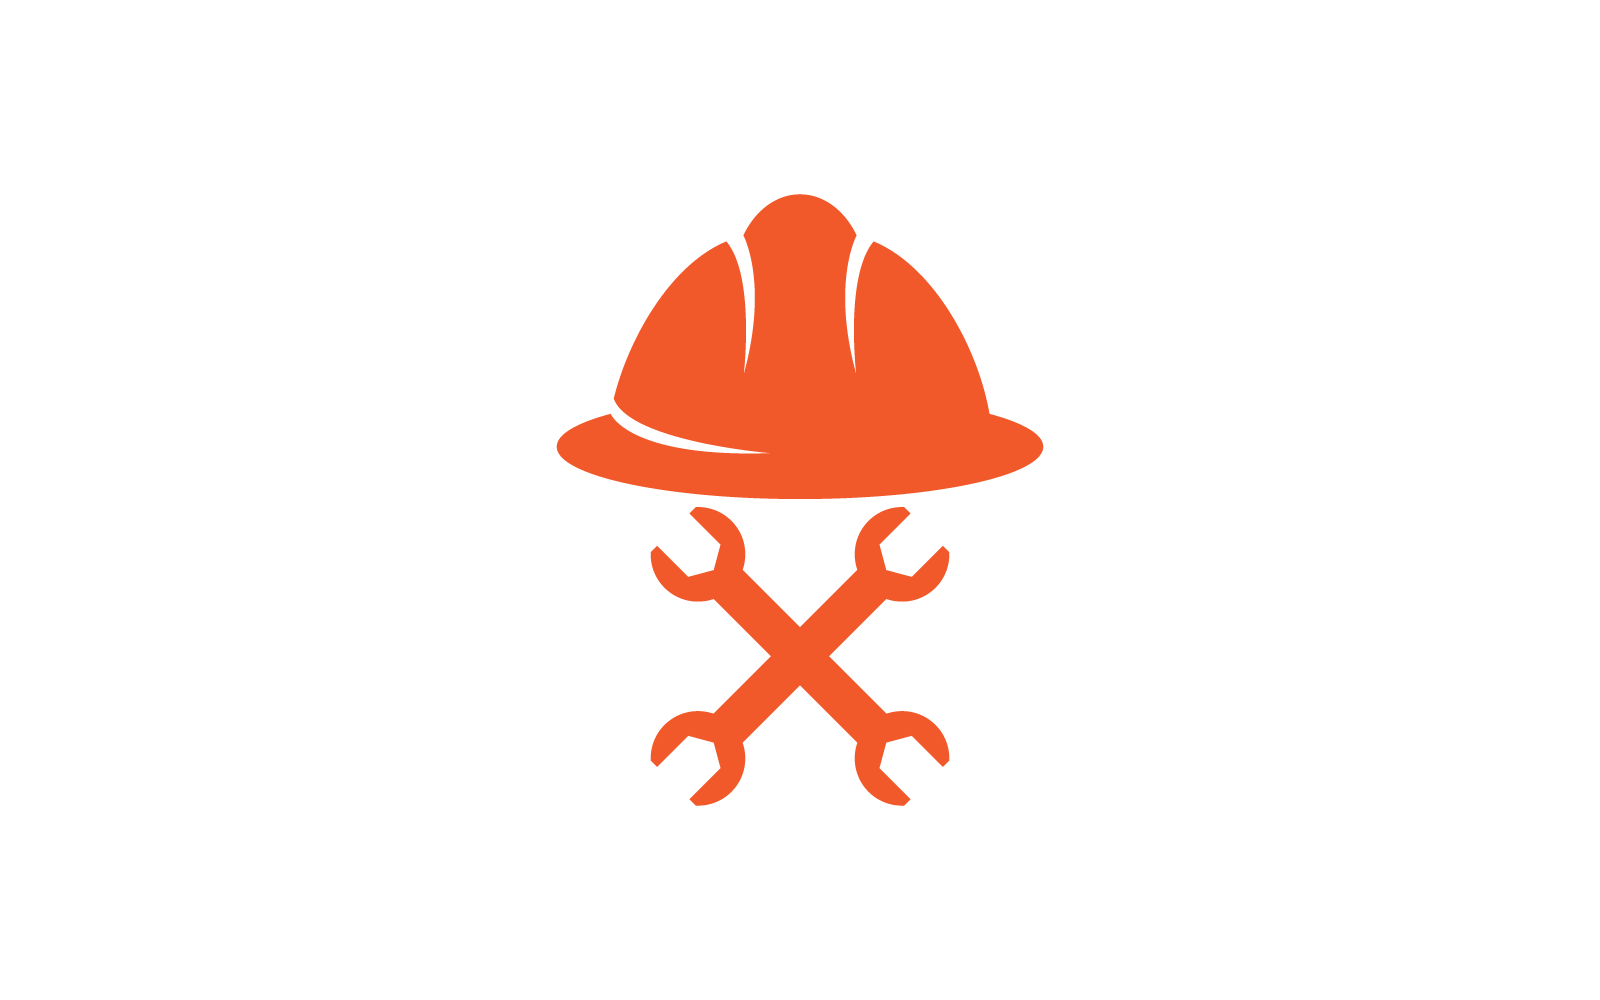 Construction worker hat or worker helmet logo vector